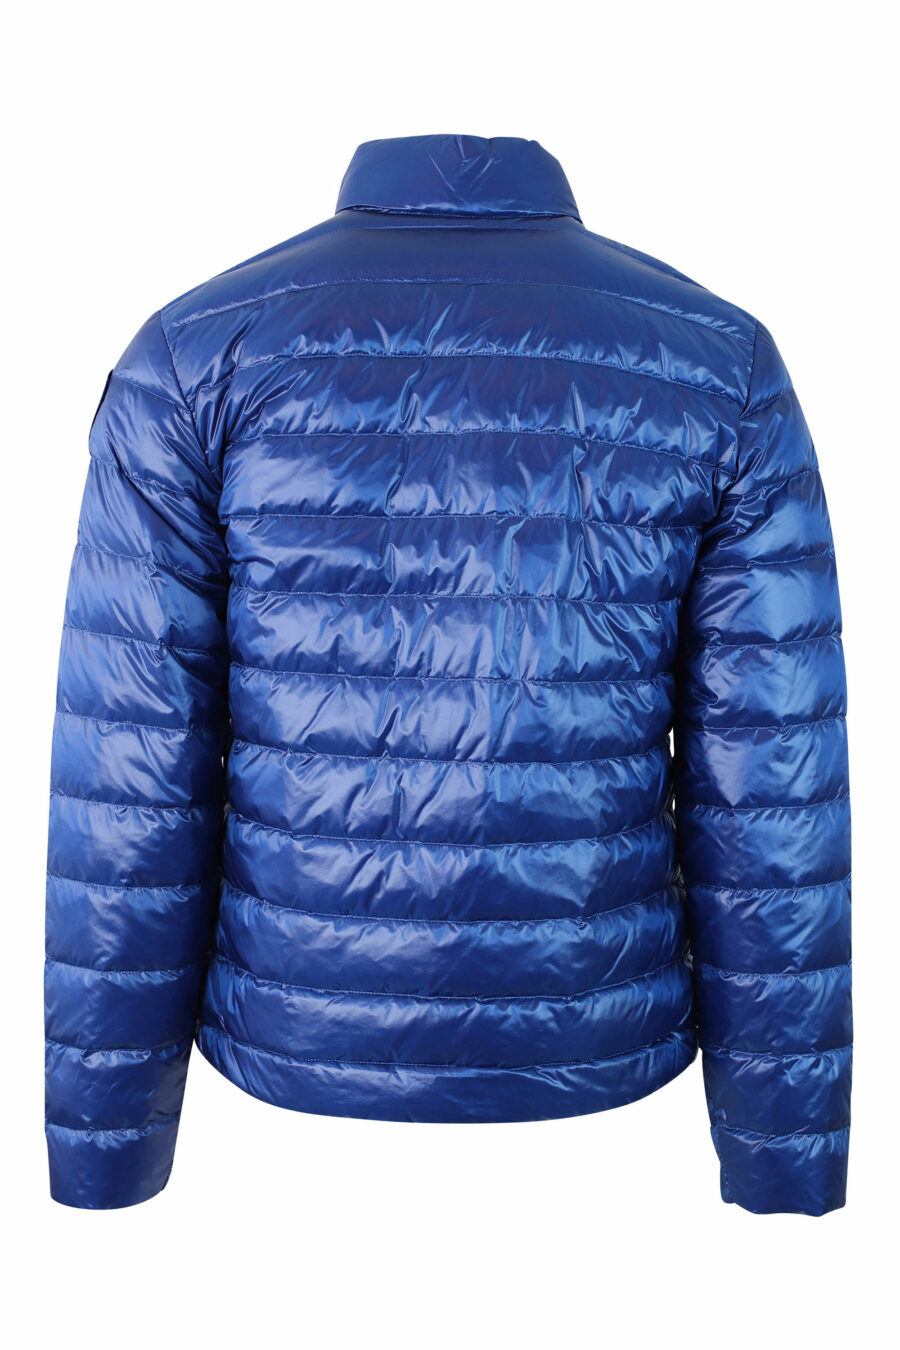 Hellblaue Jacke mit geraden Linien und Aufnäher - IMG 9790